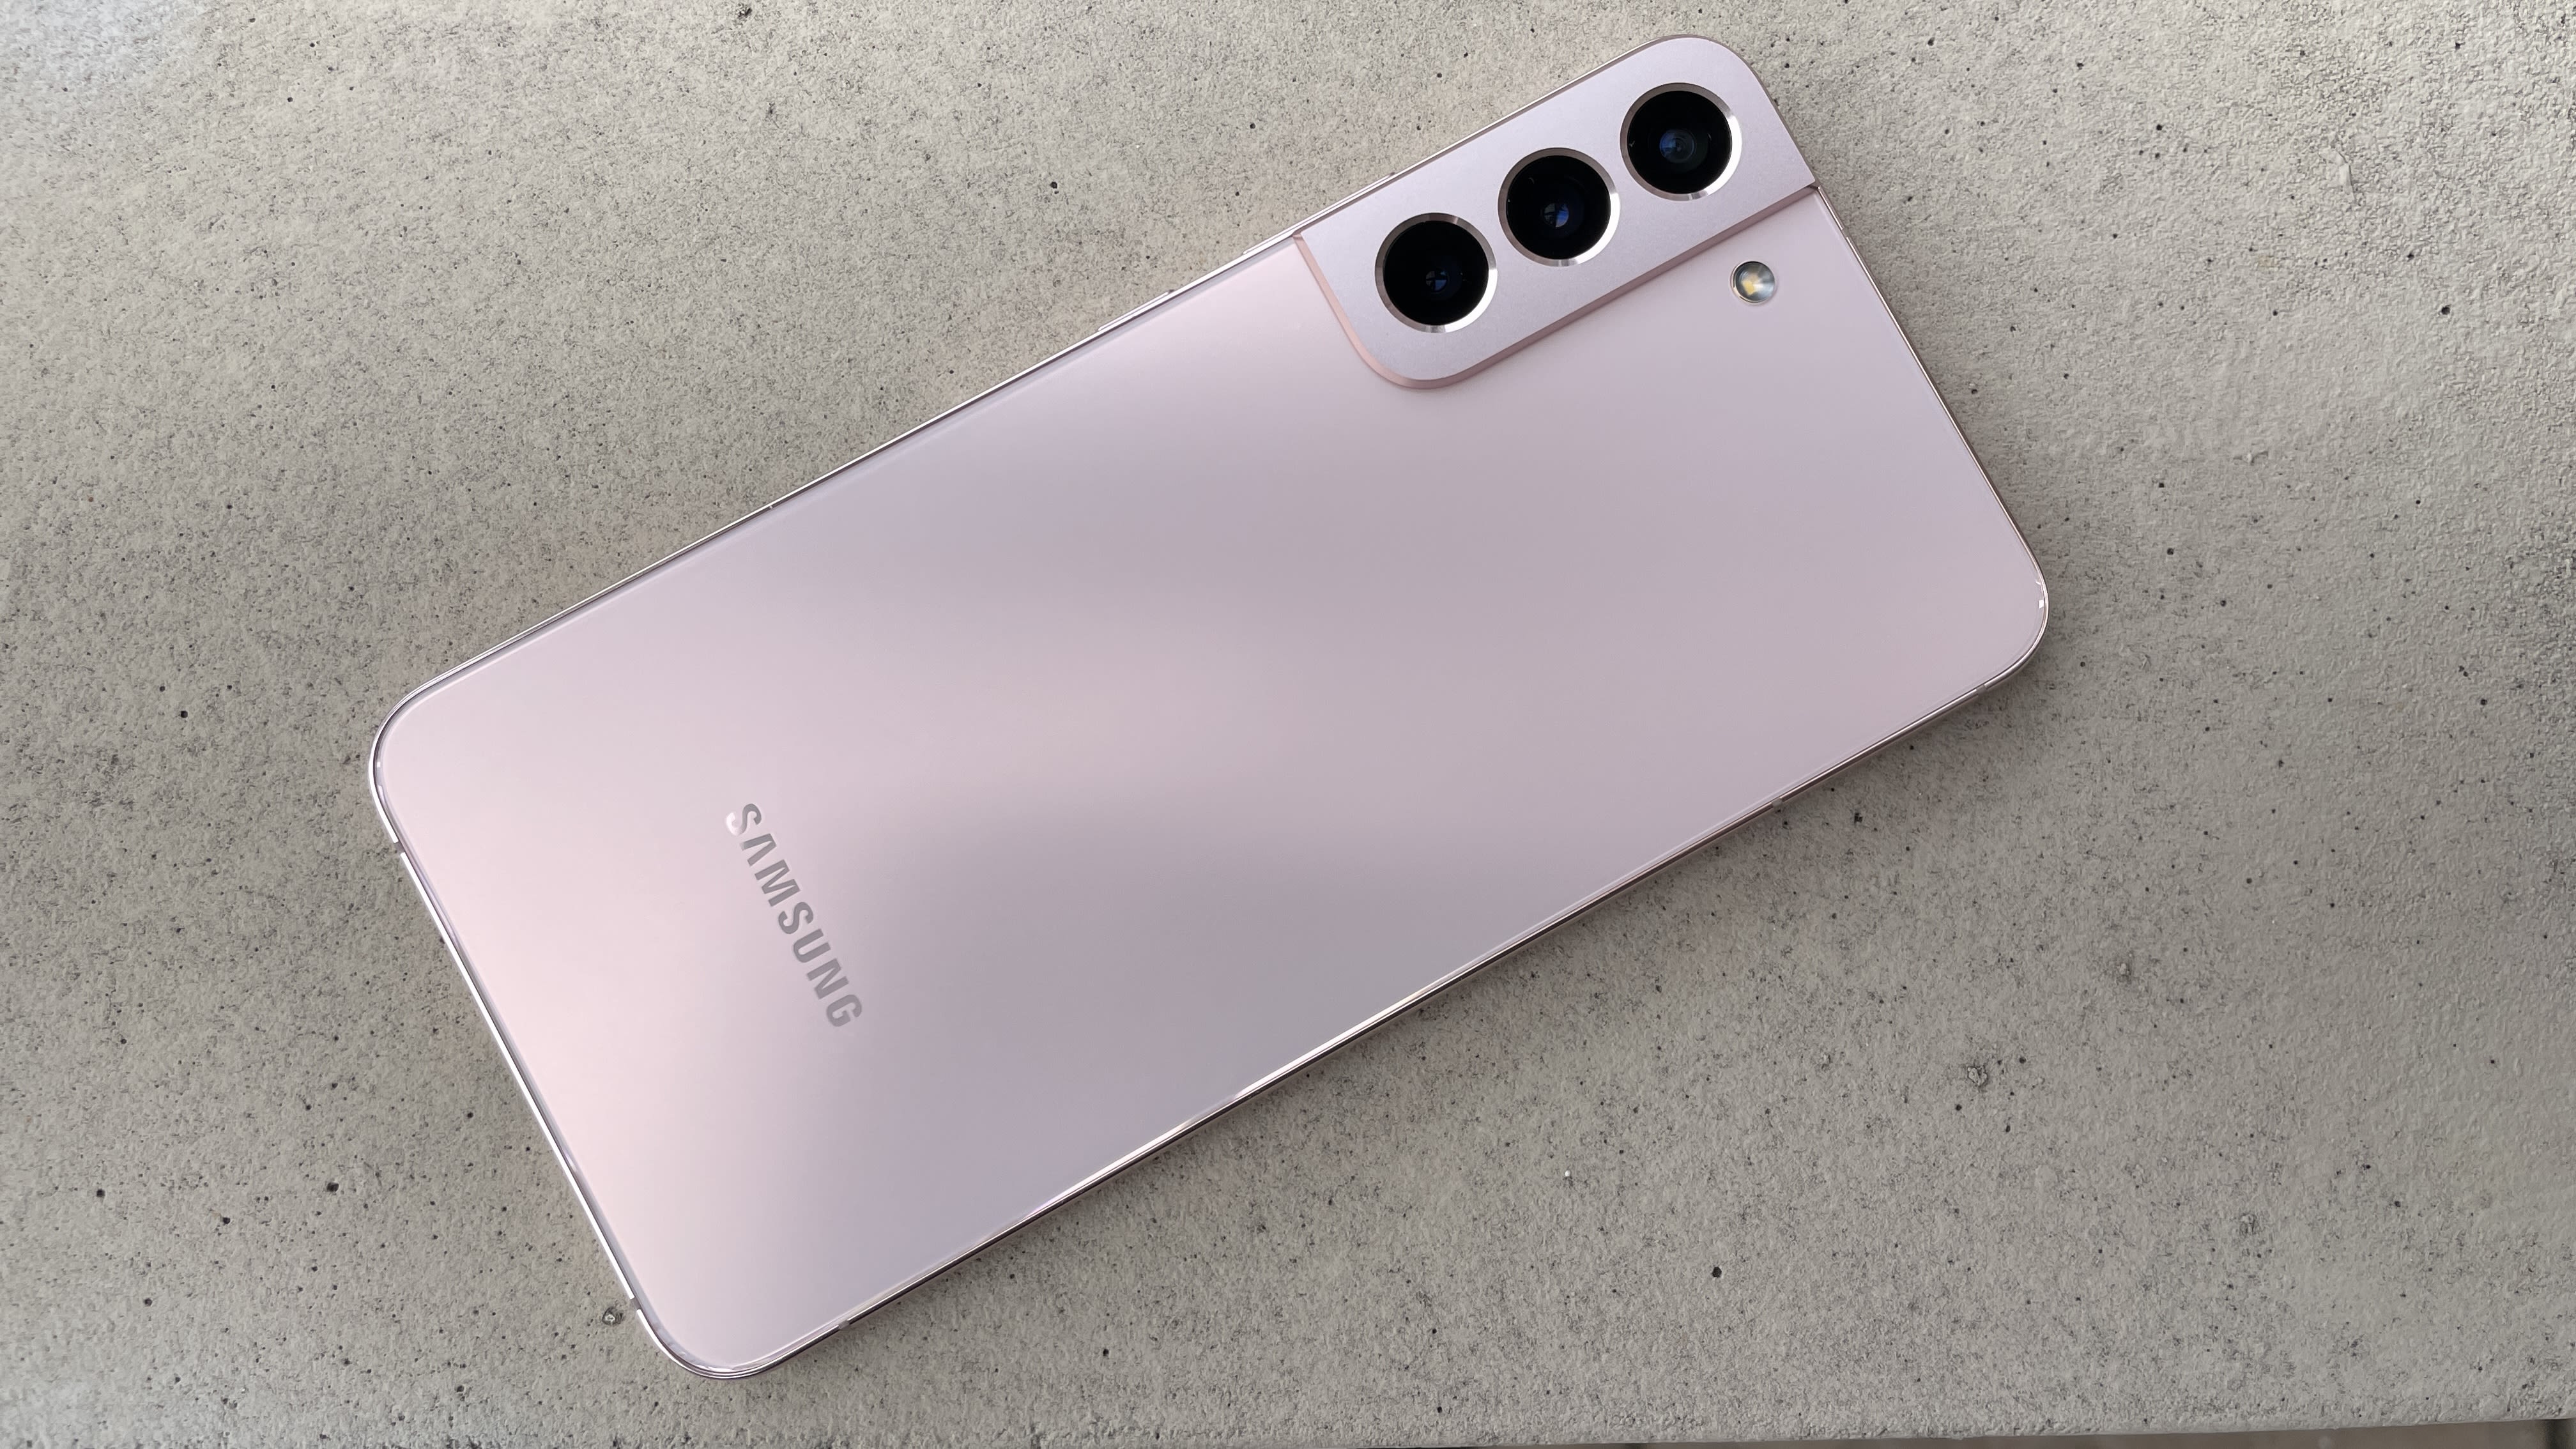 Samsung Galaxy S22+ chắc chắn sẽ là một trong những sản phẩm điện thoại được móng đợi nhất năm nay. Để biết thêm thông tin về sản phẩm này, hãy đọc đánh giá Samsung Galaxy S22+ của chúng tôi. Đây là một bài đánh giá hoàn chỉnh về tất cả các tính năng của sản phẩm, đưa ra những nhận xét chân thật và công bằng.